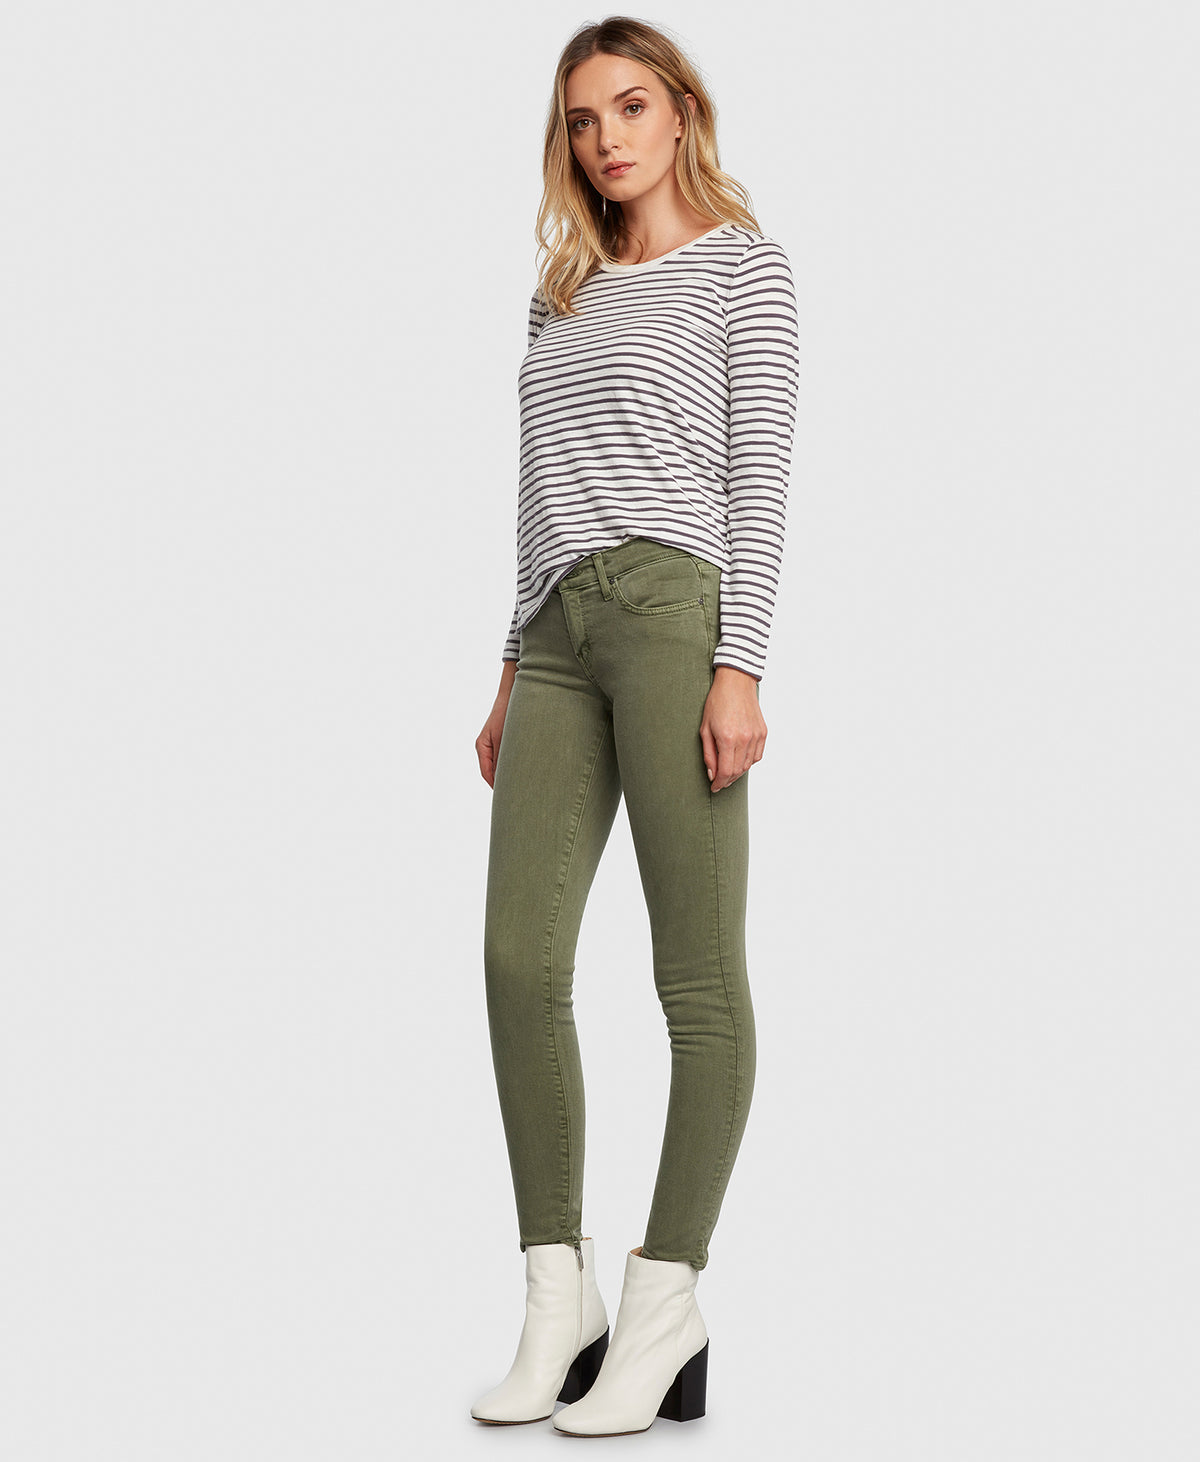 Principle Women's Jeans DREAMER in Eden green twill side